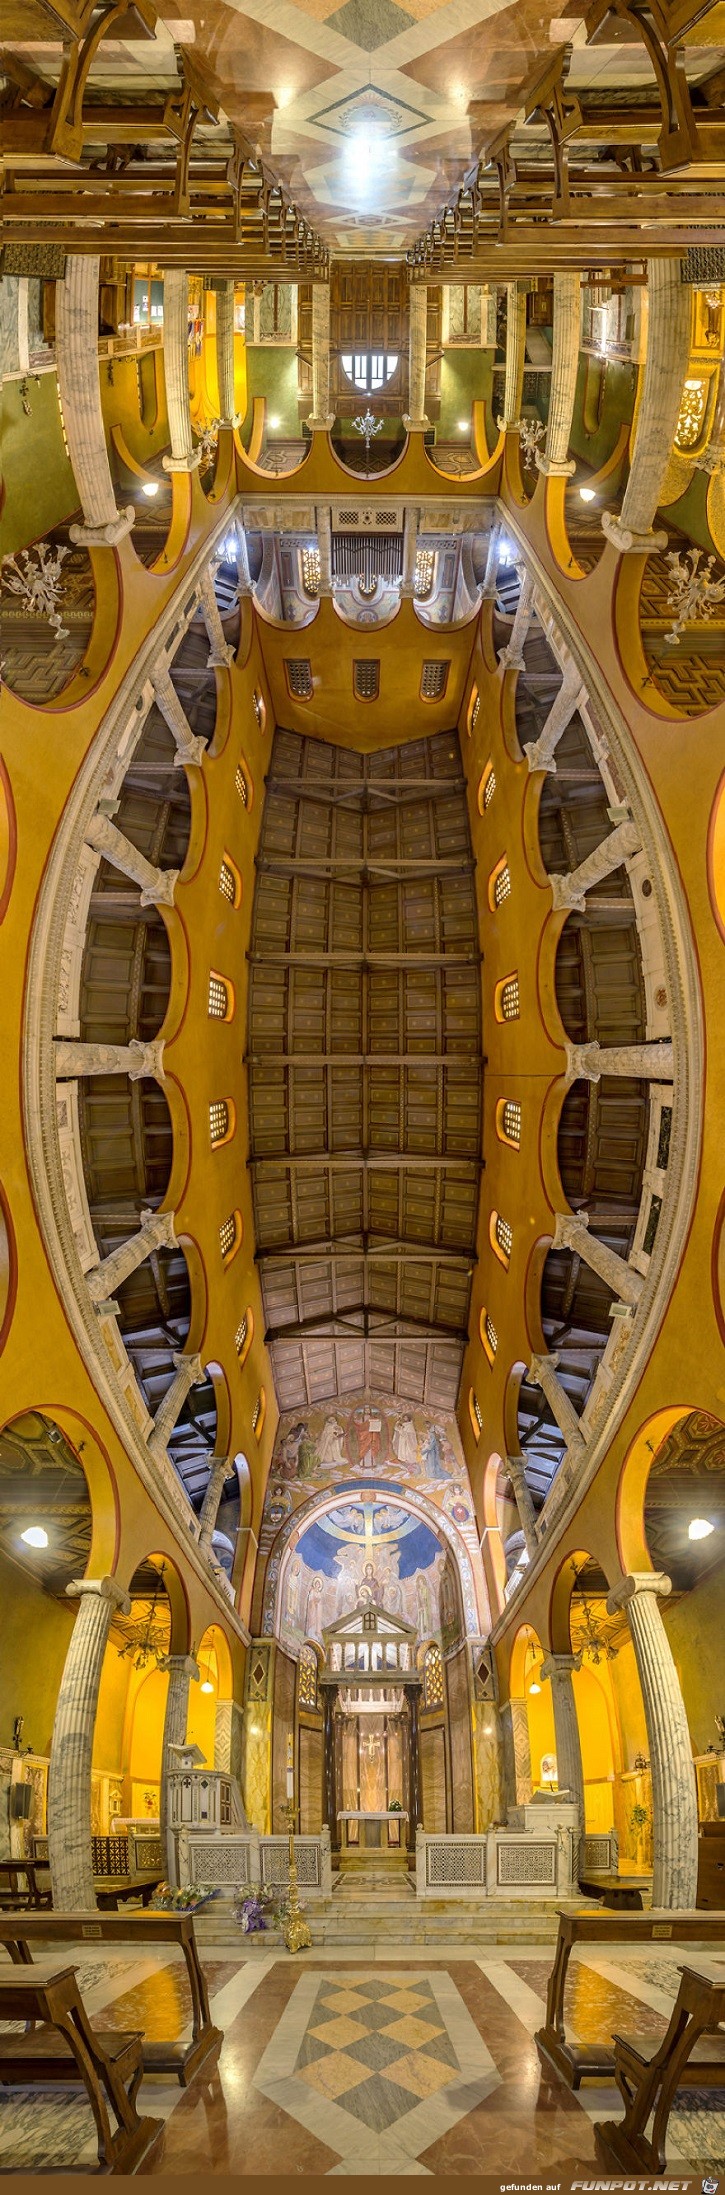 Ungewoehnliche Panoramabilder aus Kirchen 12